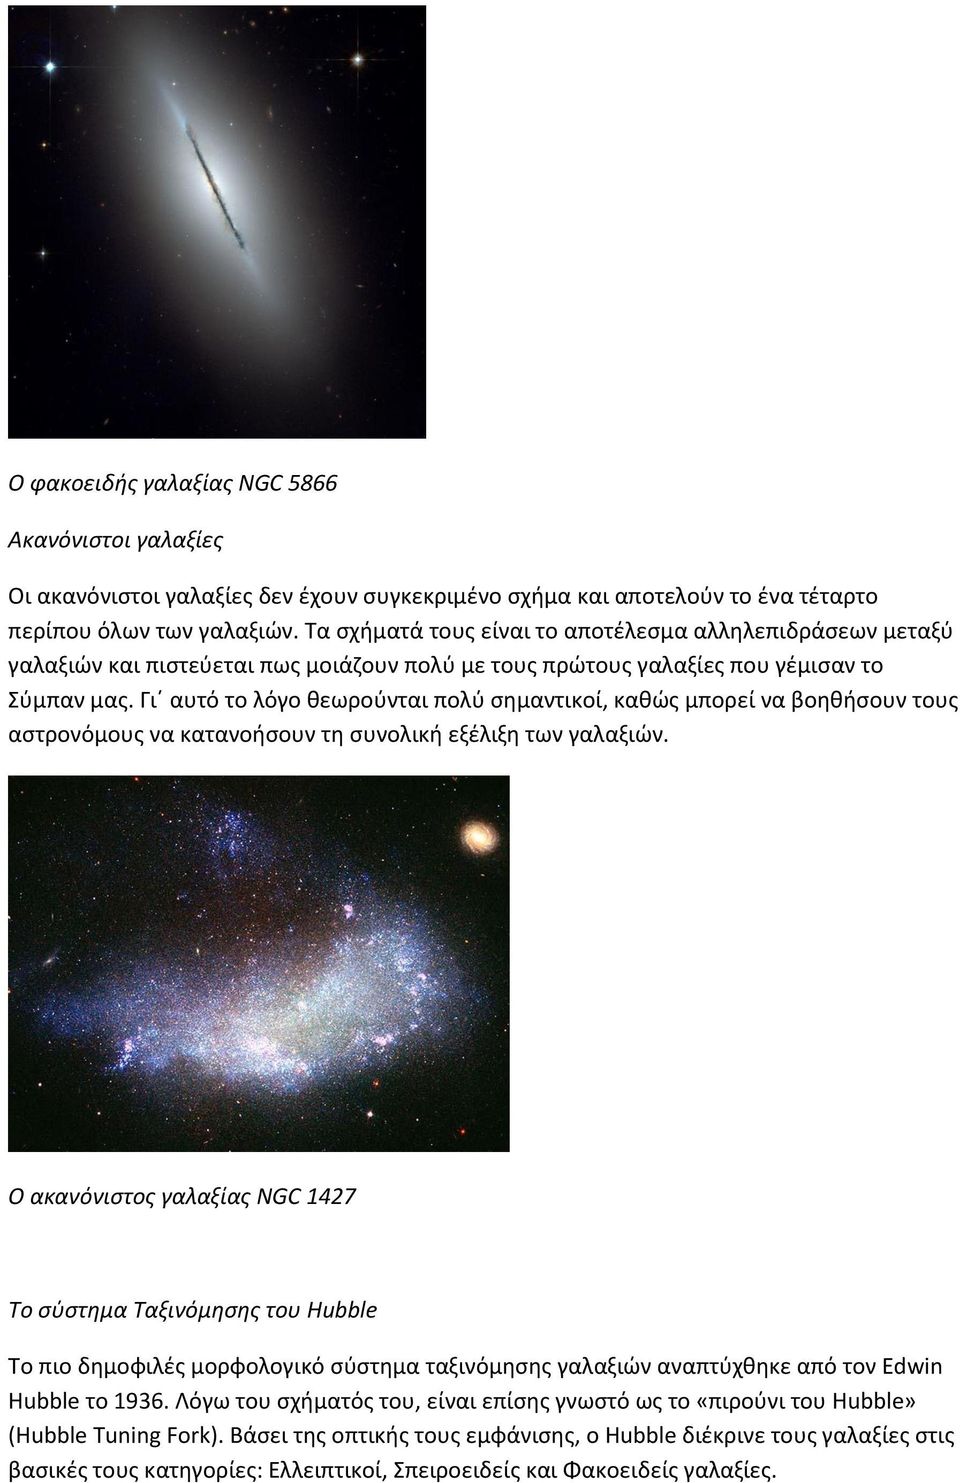 Γι αυτό το λόγο θεωρούνται πολύ σημαντικοί, καθώς μπορεί να βοηθήσουν τους αστρονόμους να κατανοήσουν τη συνολική εξέλιξη των γαλαξιών.